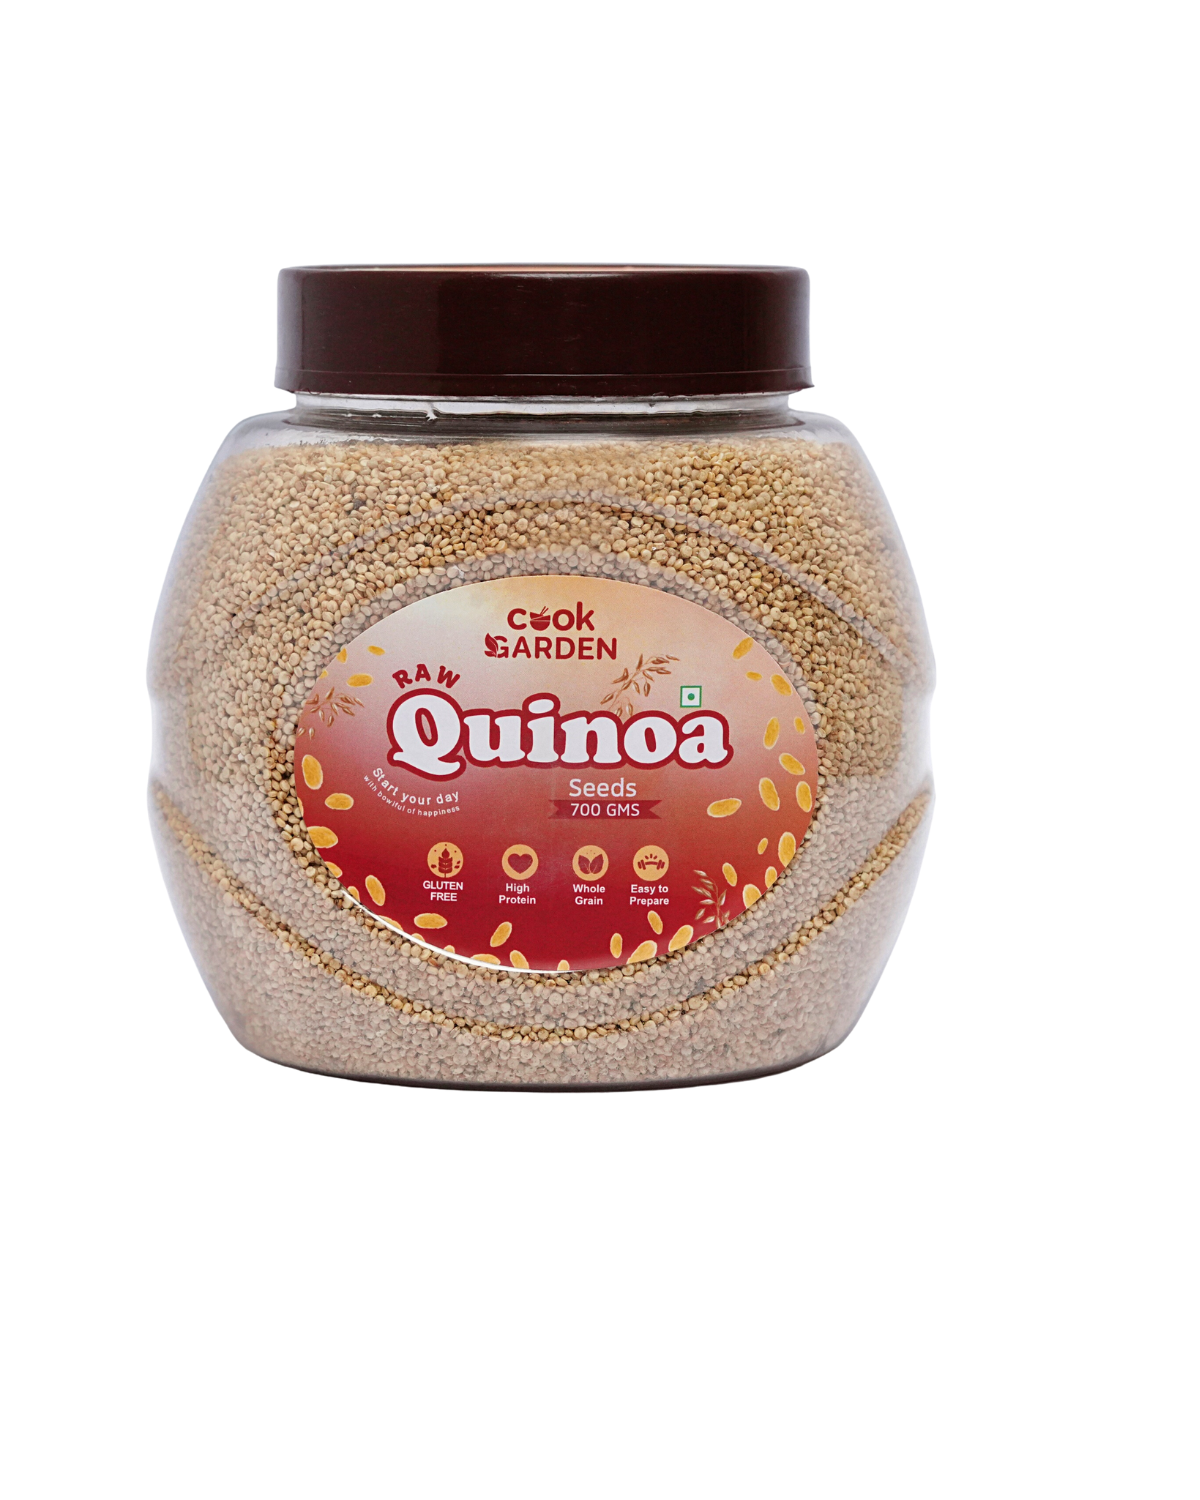 Cook Garden Raw Quinoa Seeds 700gm